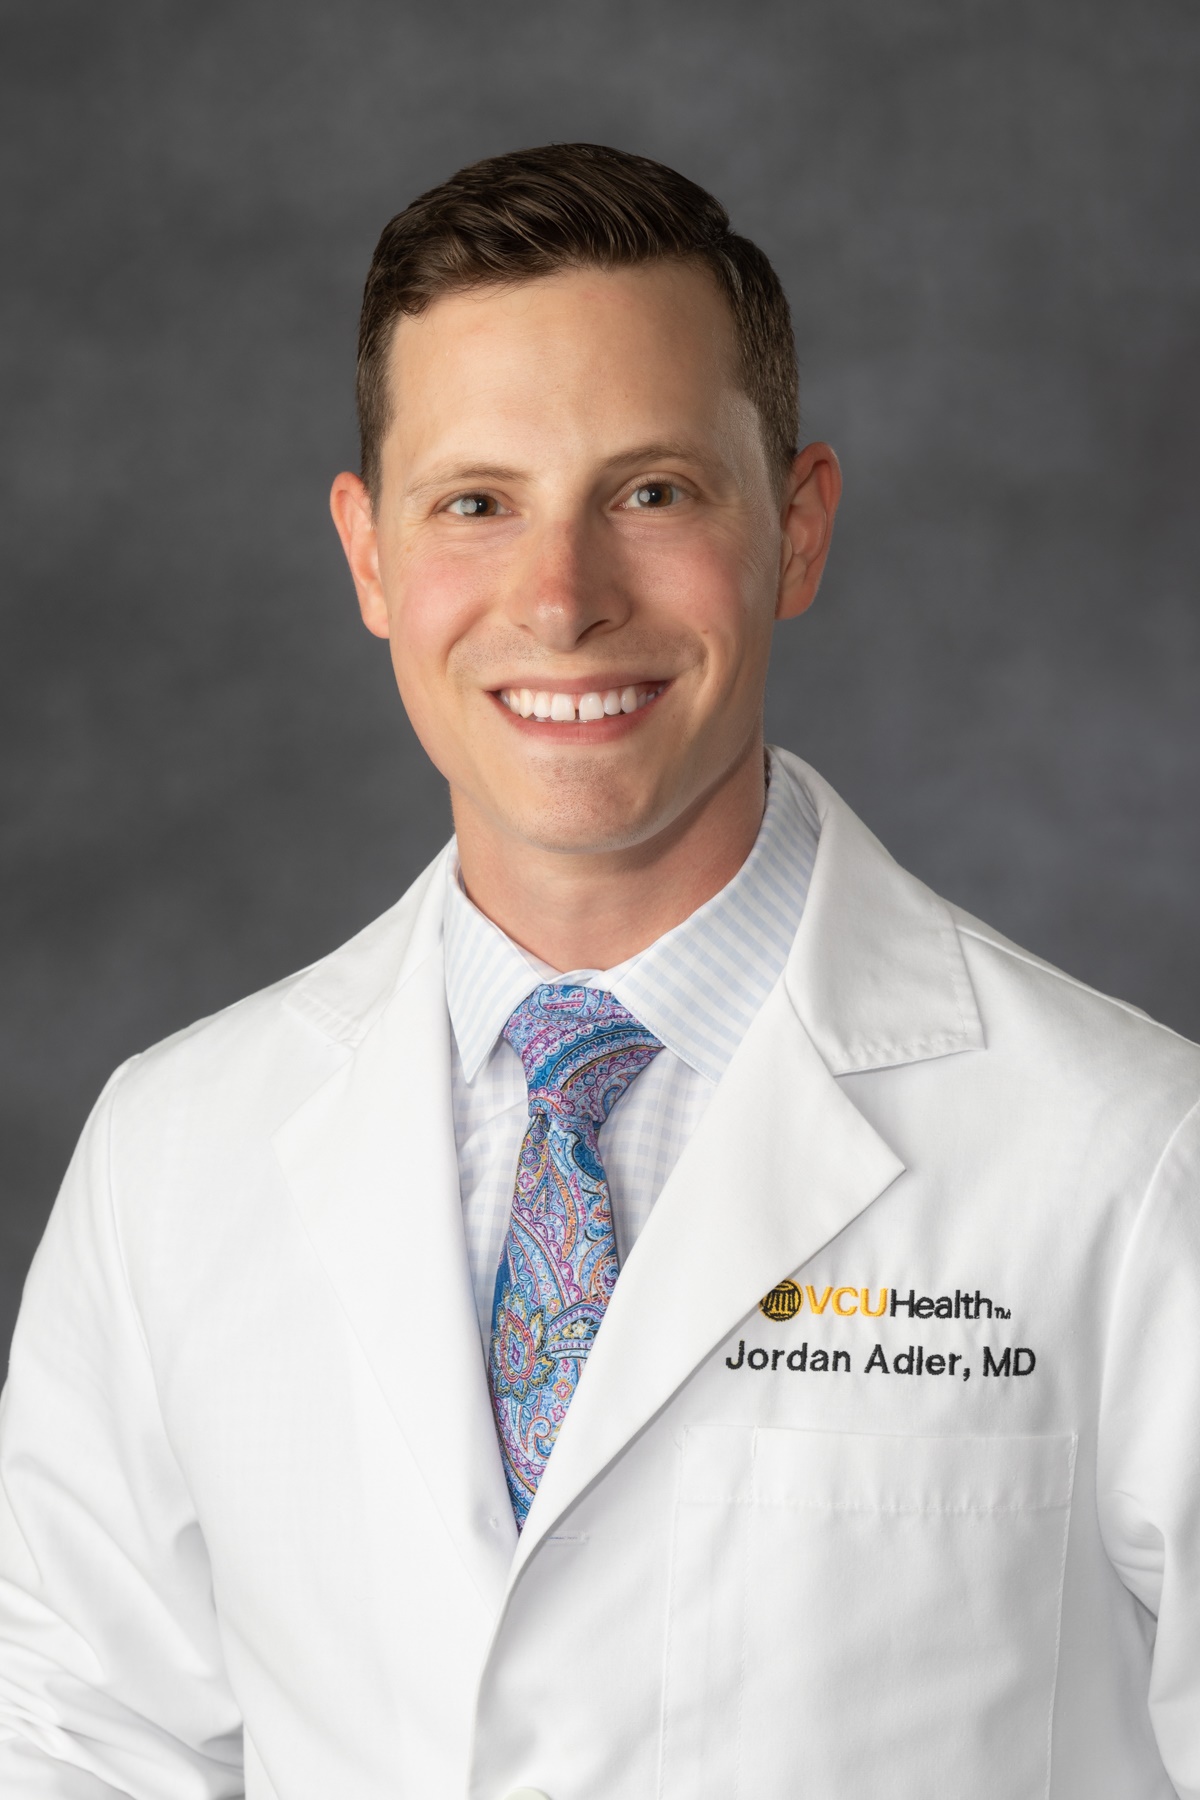 Jordan Adler, MD